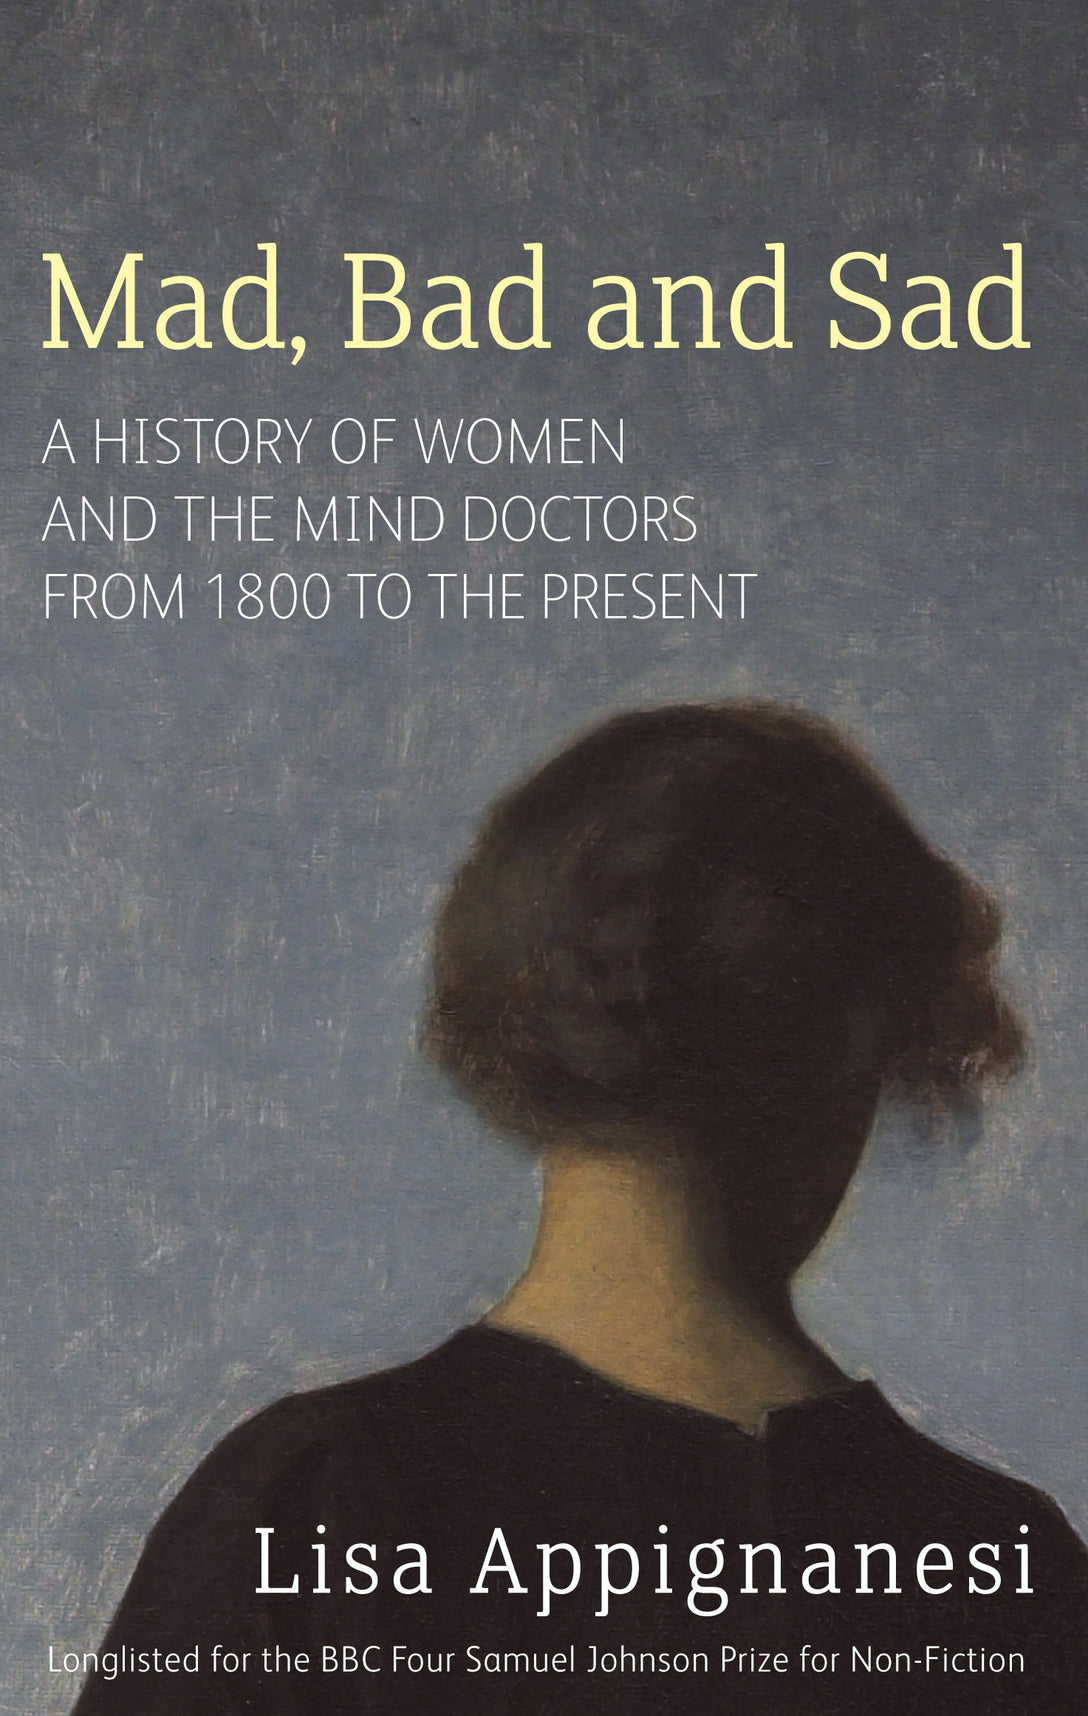 Mad, Bad And Sad by Lisa Appignanesi